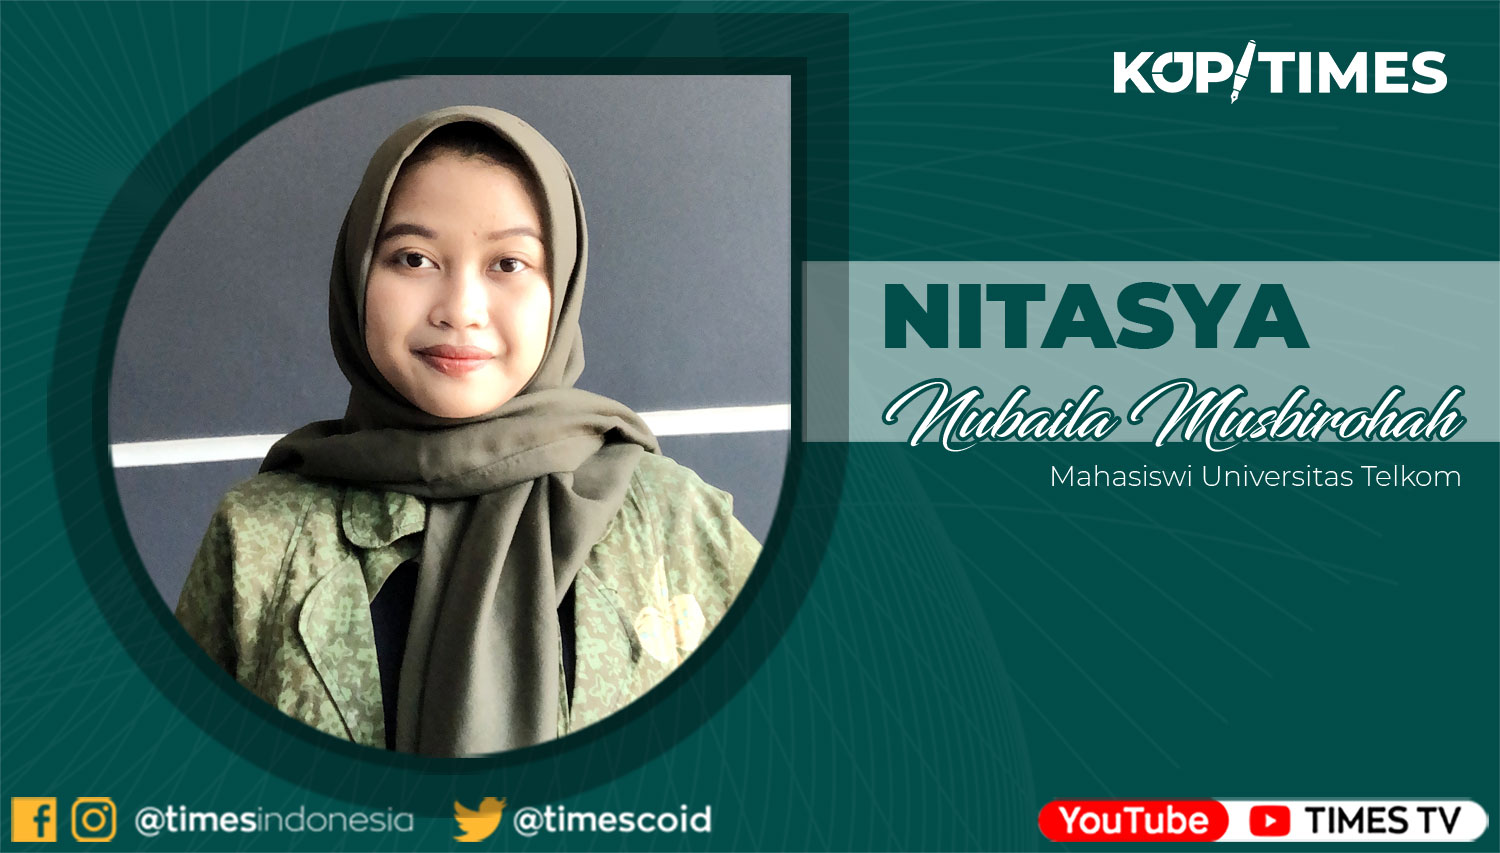 Nitasya Nubaila Musbirohah, Mahasiswa Prodi S1 Digital Public Relations Telkom University.